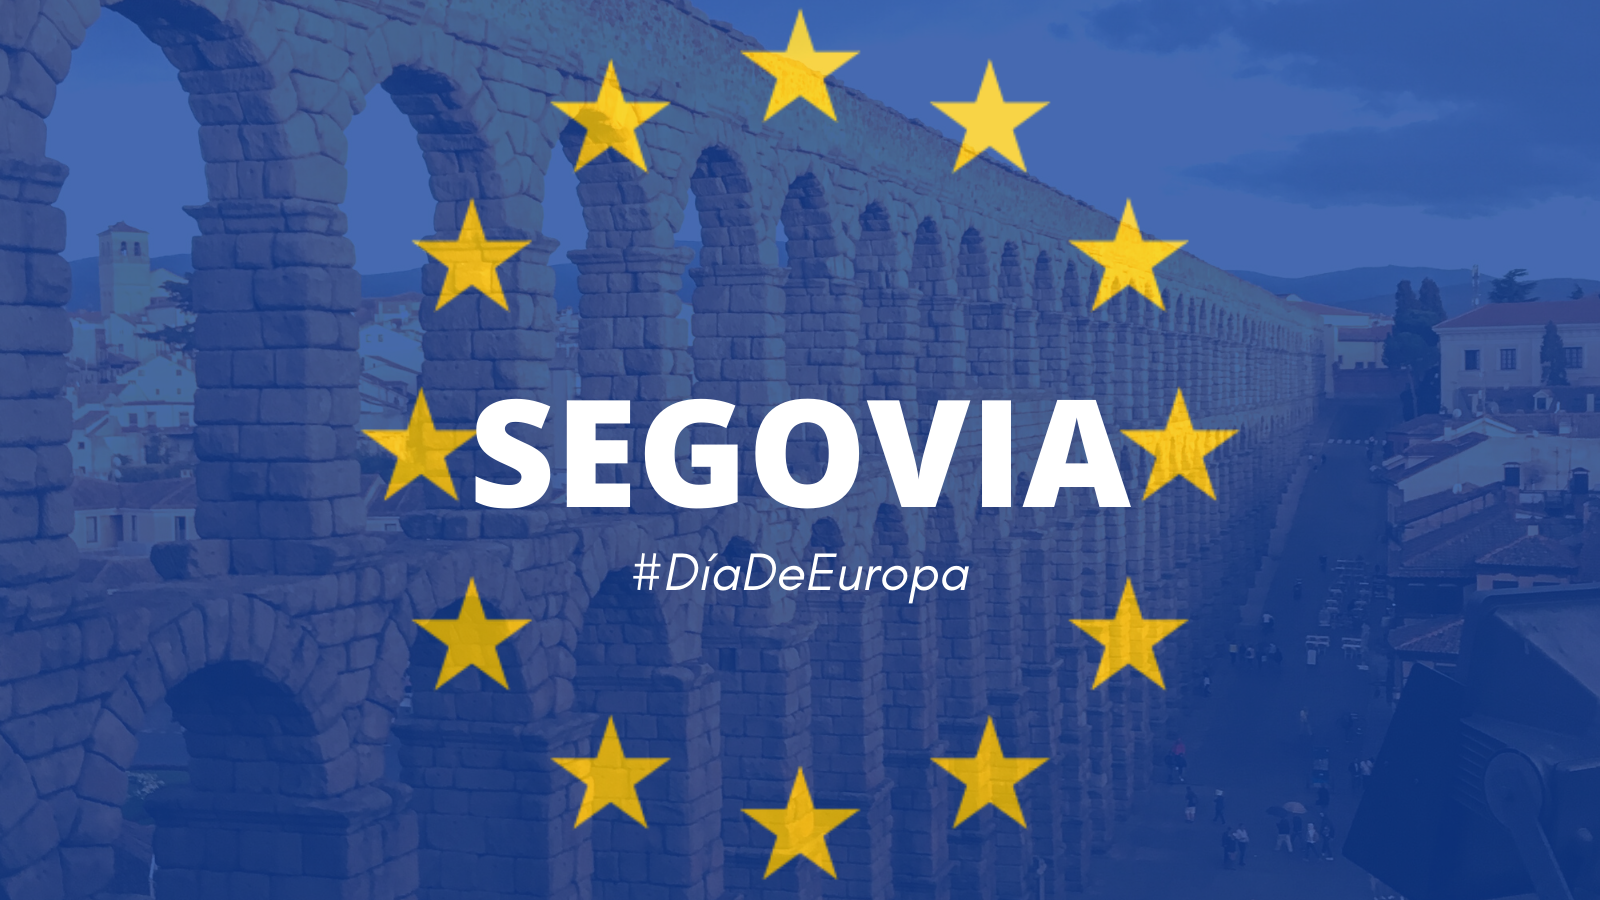 Europa es mágica celebración en Segovia